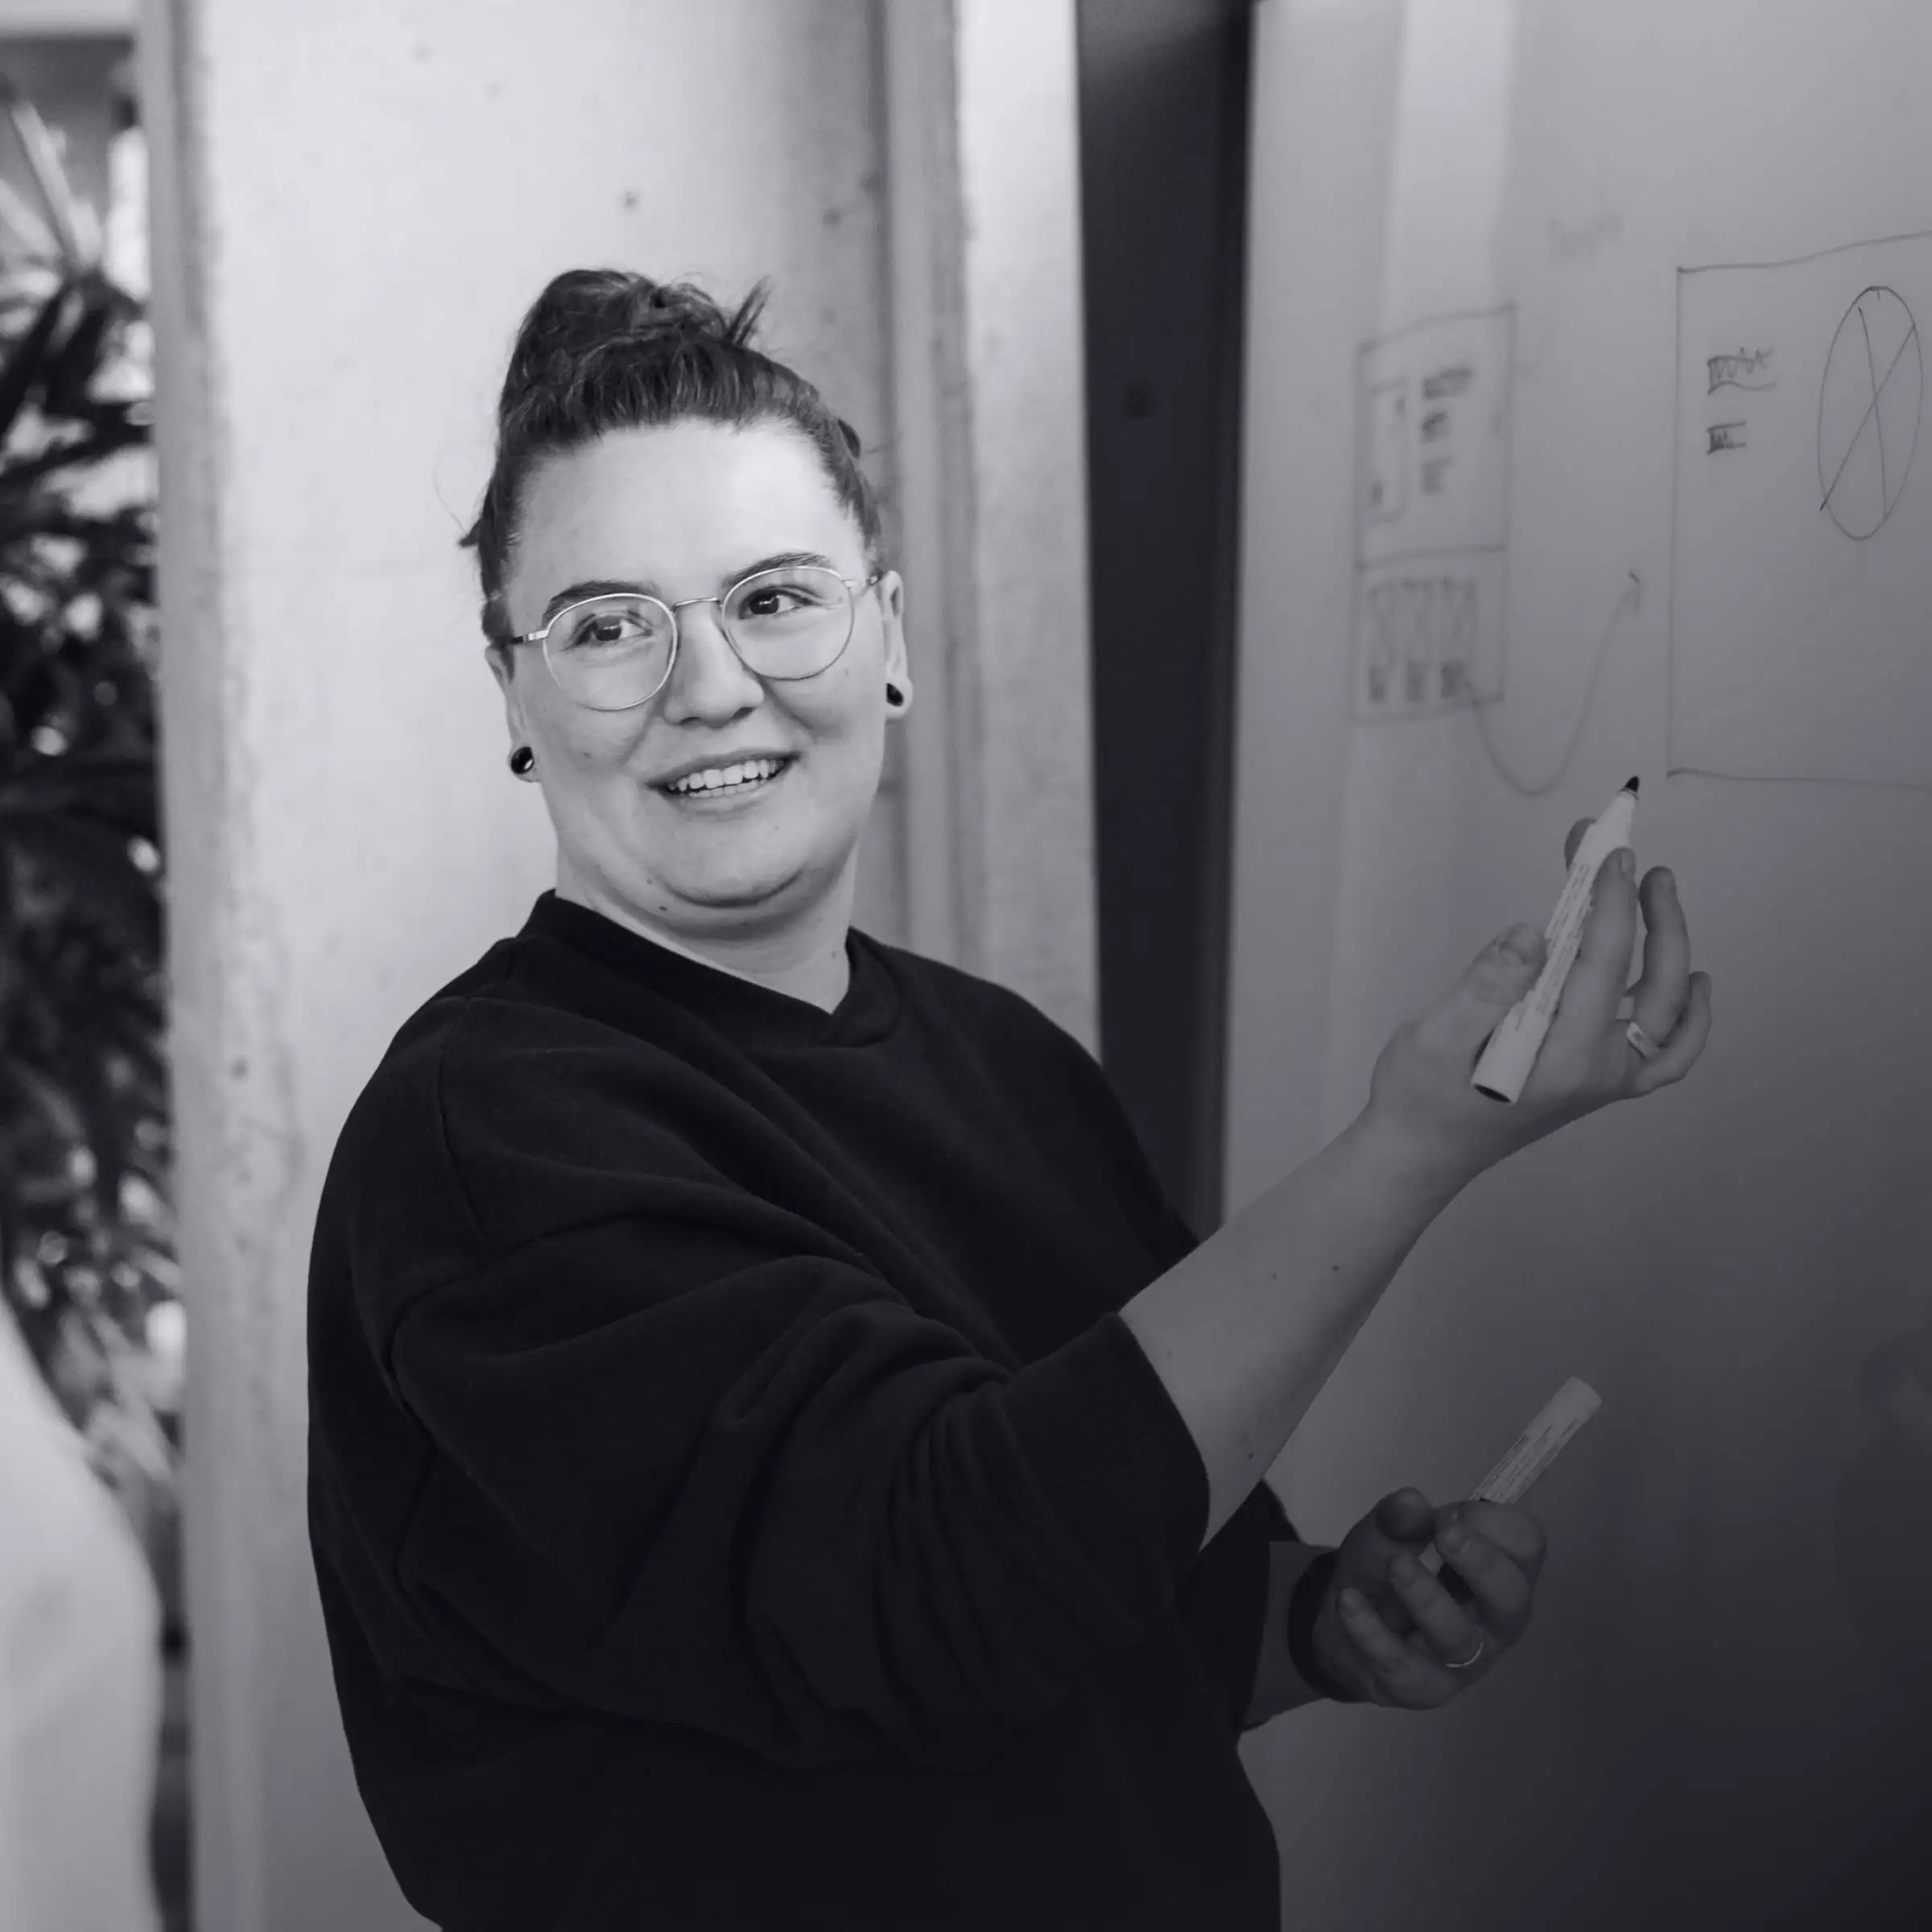 Flora Maxwell, UI Designerin zeichnet Wireframe am Whiteboard